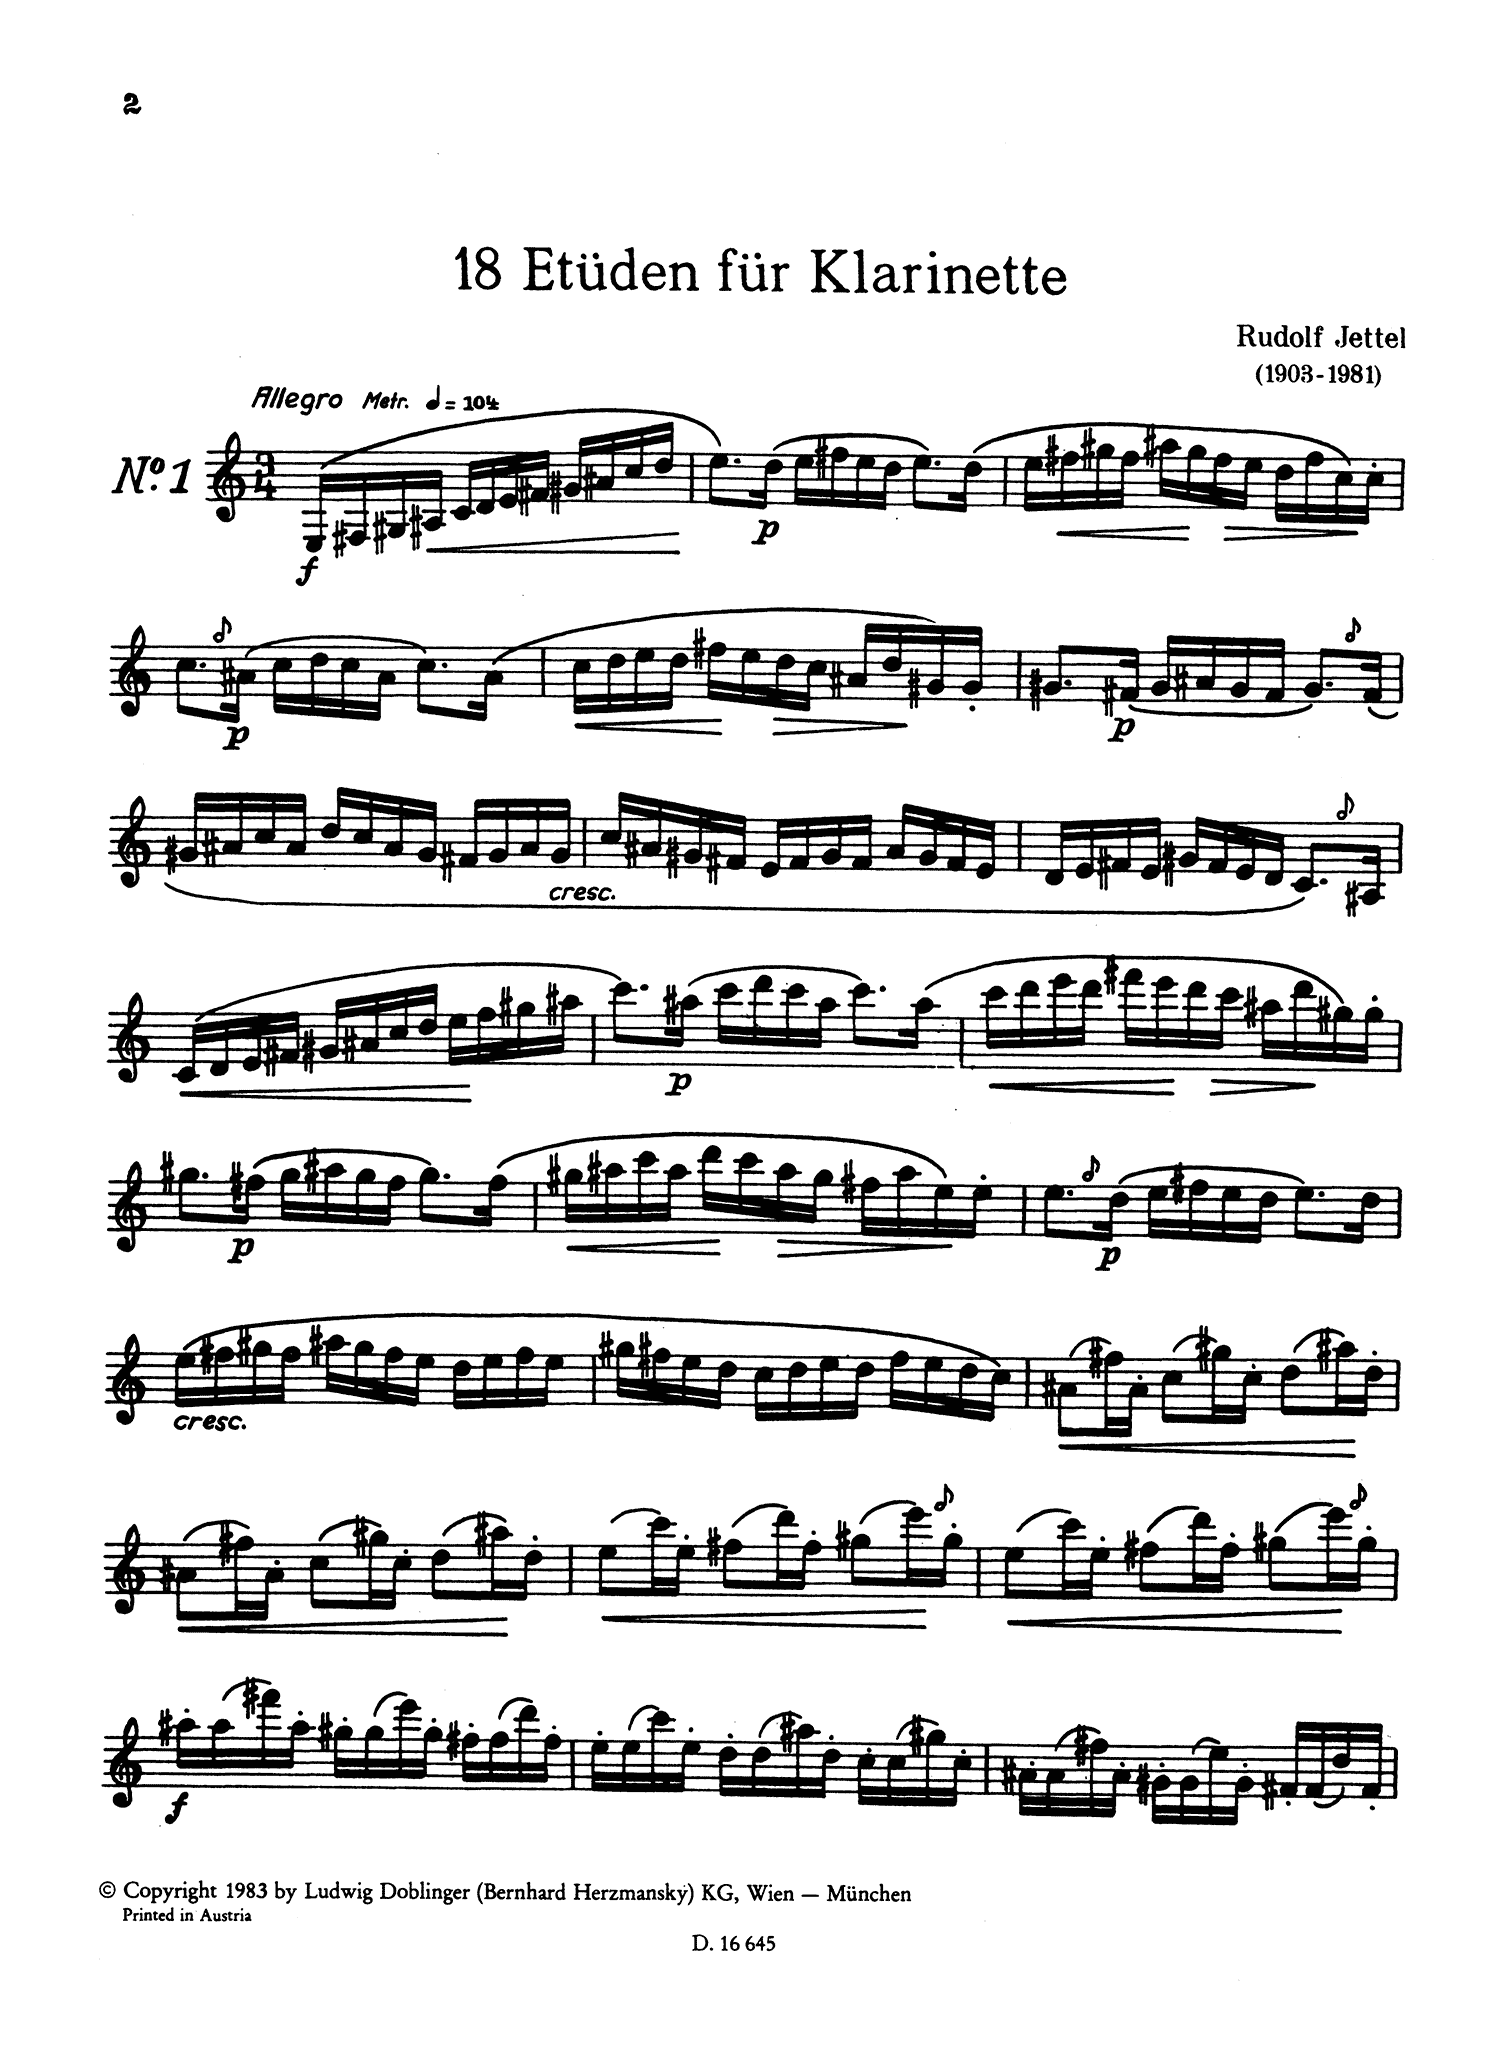 Jettel 18 Études for Clarinet Page 2